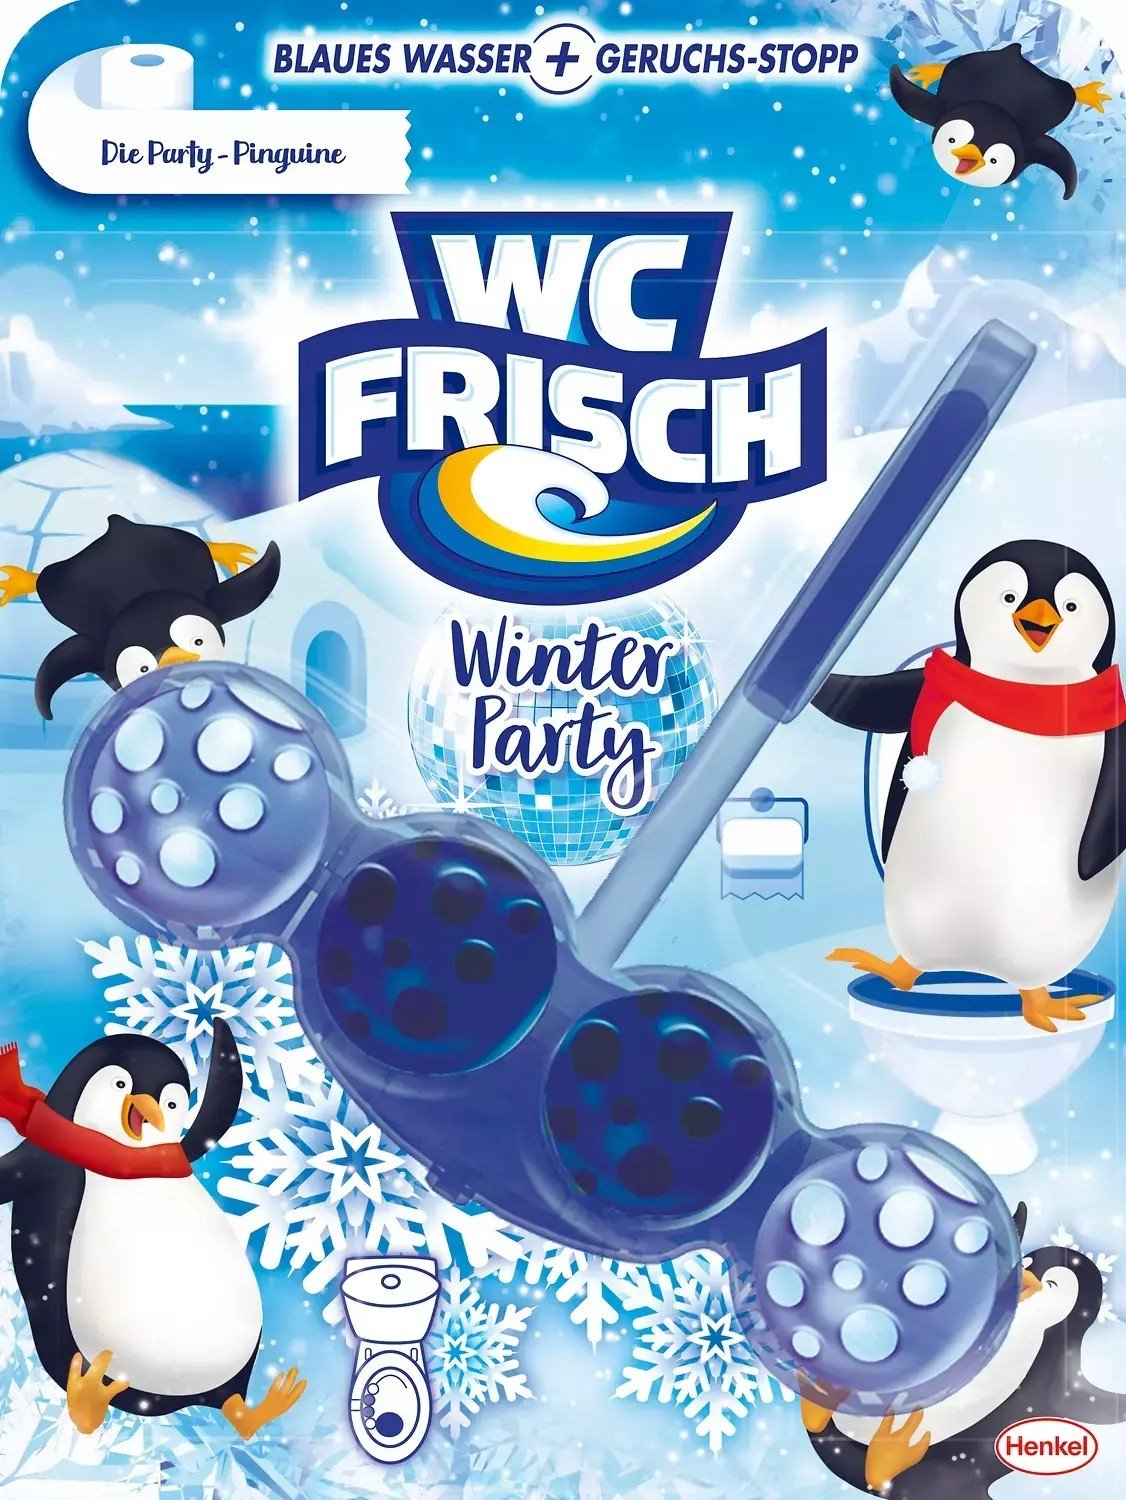 Wc Frisch Winter Party Pinguine Wc závěs De